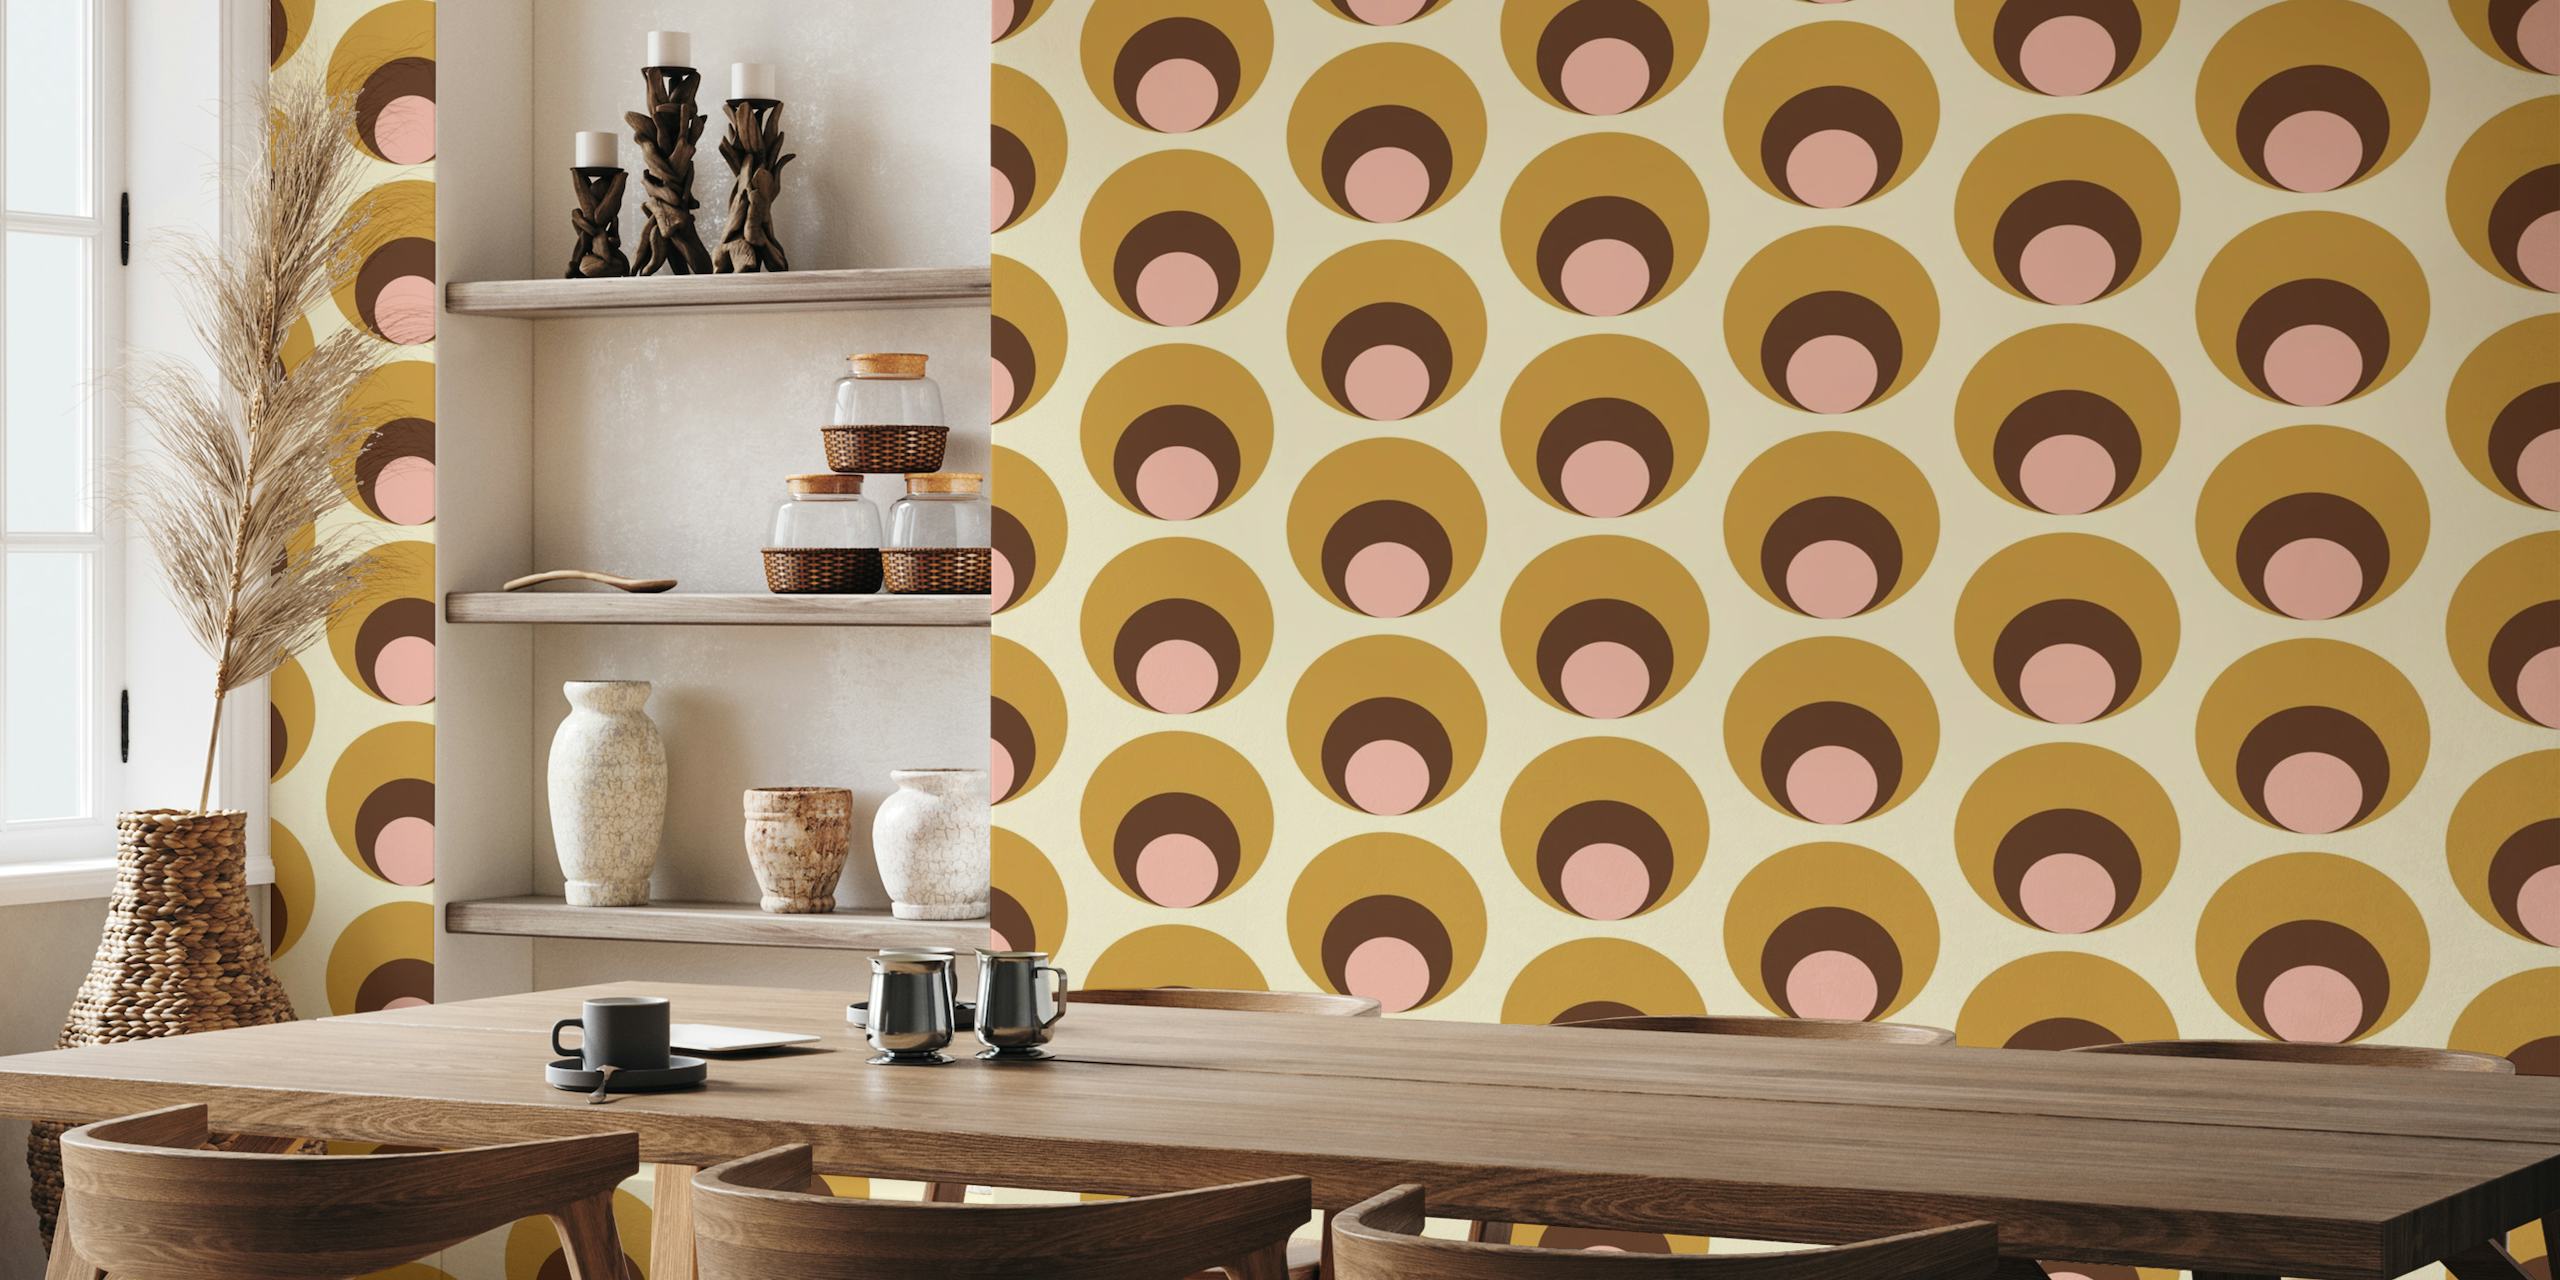 Apricity Retro Dots Beige muurschildering met overlappende cirkels in beige, taupe en blush tinten.